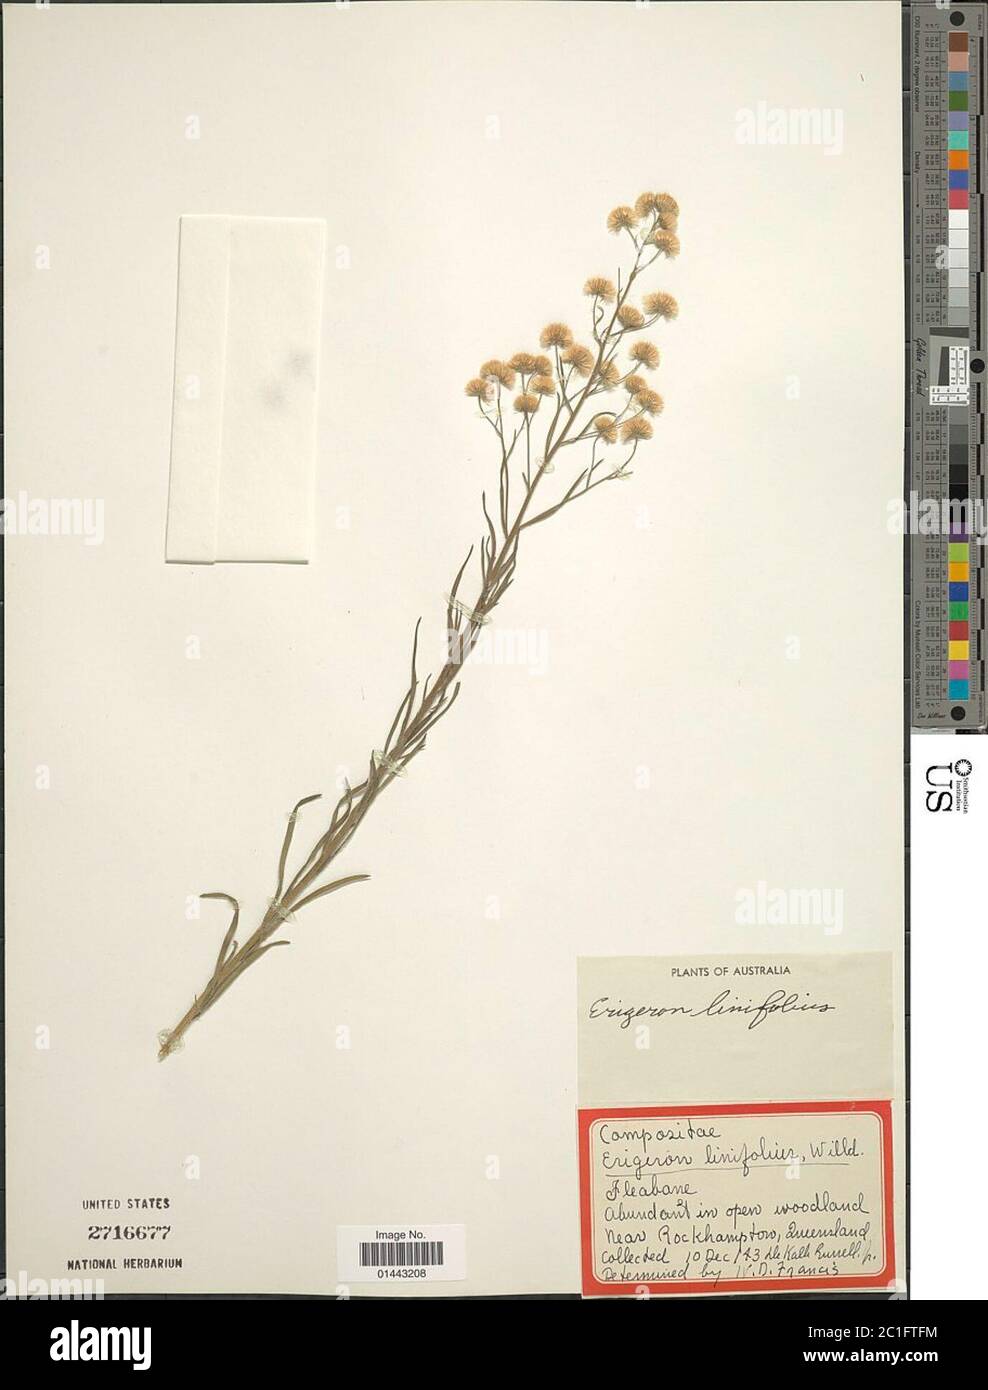 Erigeron linifolius Willd Erigeron linifolius Willd. Stock Photo